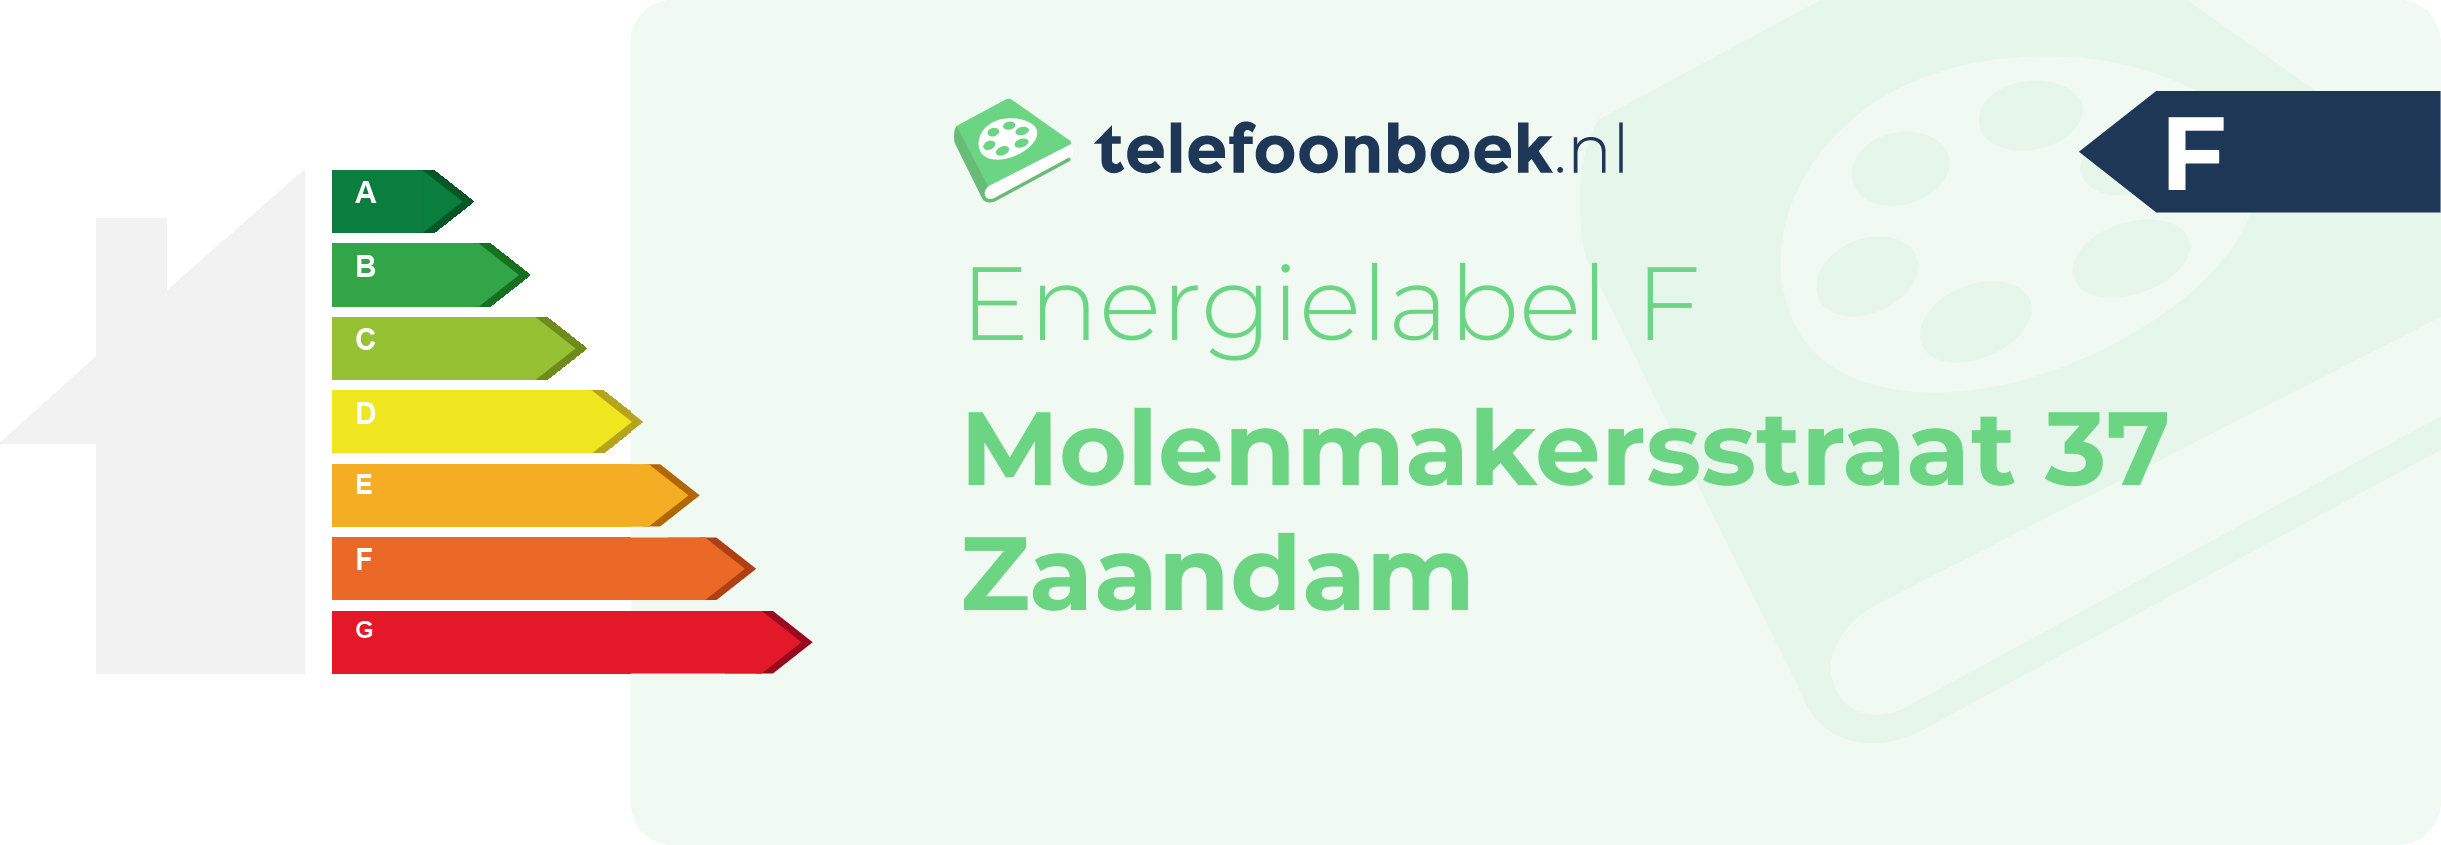 Energielabel Molenmakersstraat 37 Zaandam